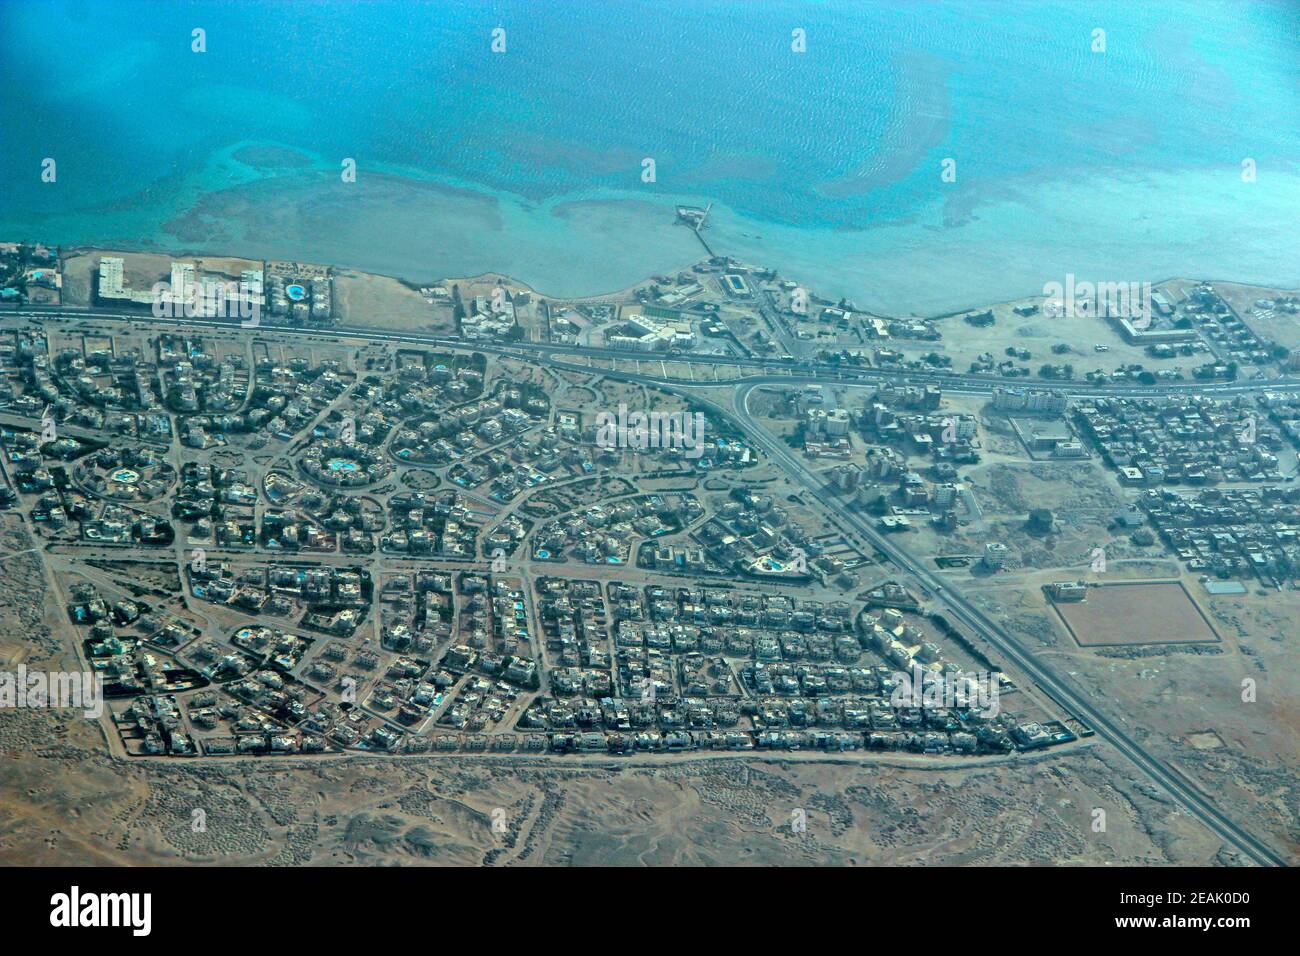 Luftaufnahme der Stadt mit Häusern, Gebäuden, am Meer in Ägypten. Fliegen über Land Stockfoto